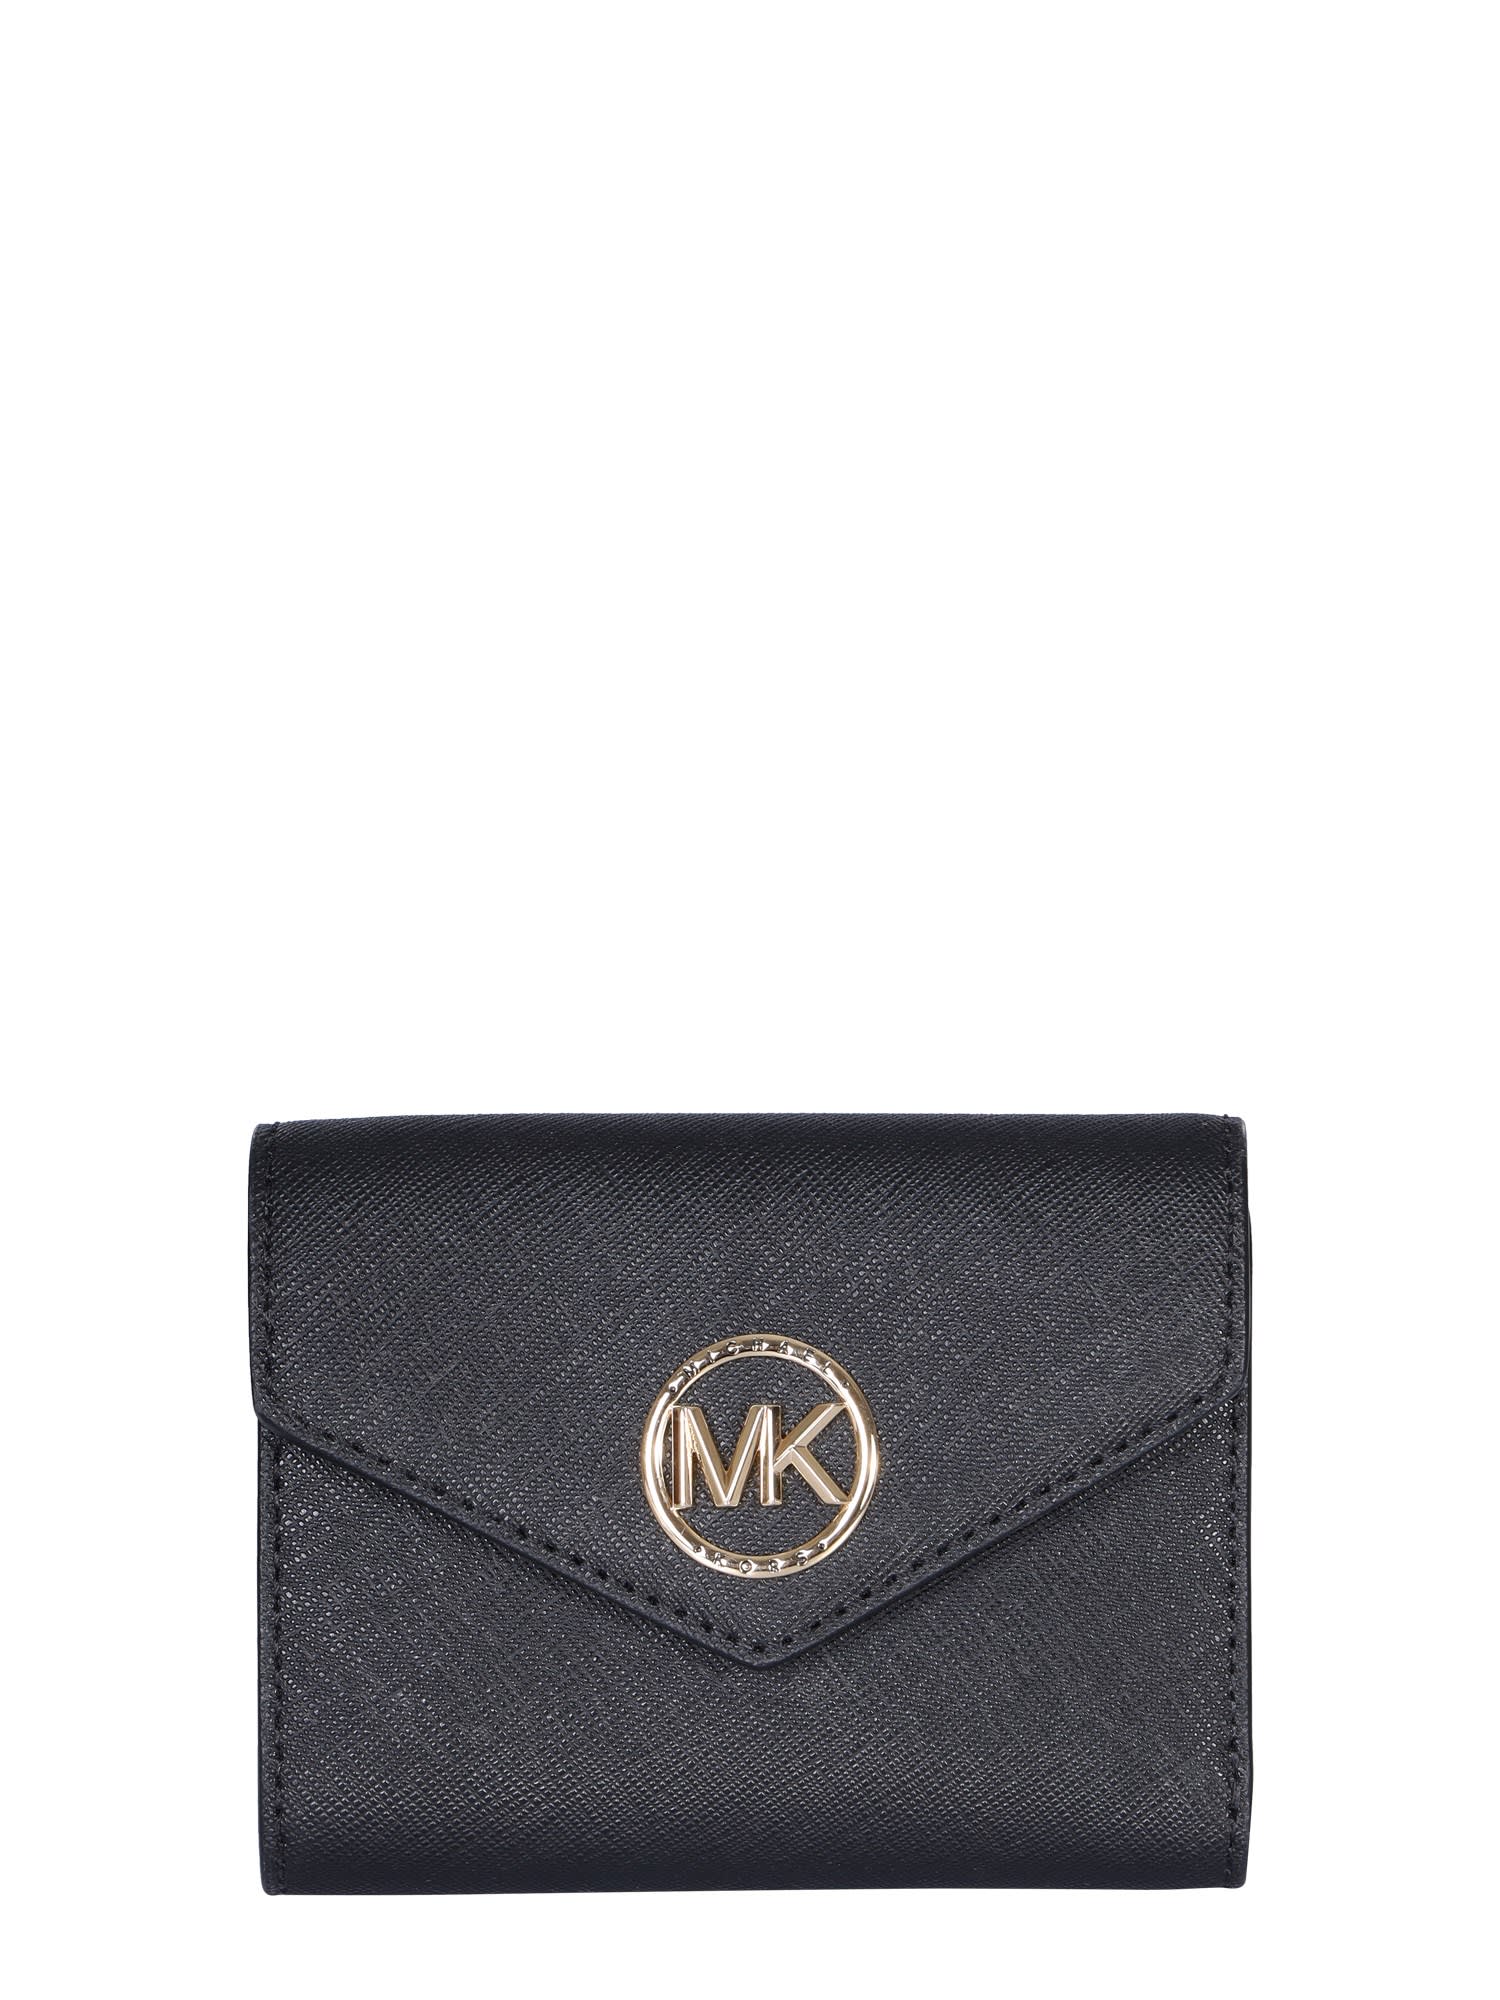 Michael Kors Greenwich Trifold Wallet In Black